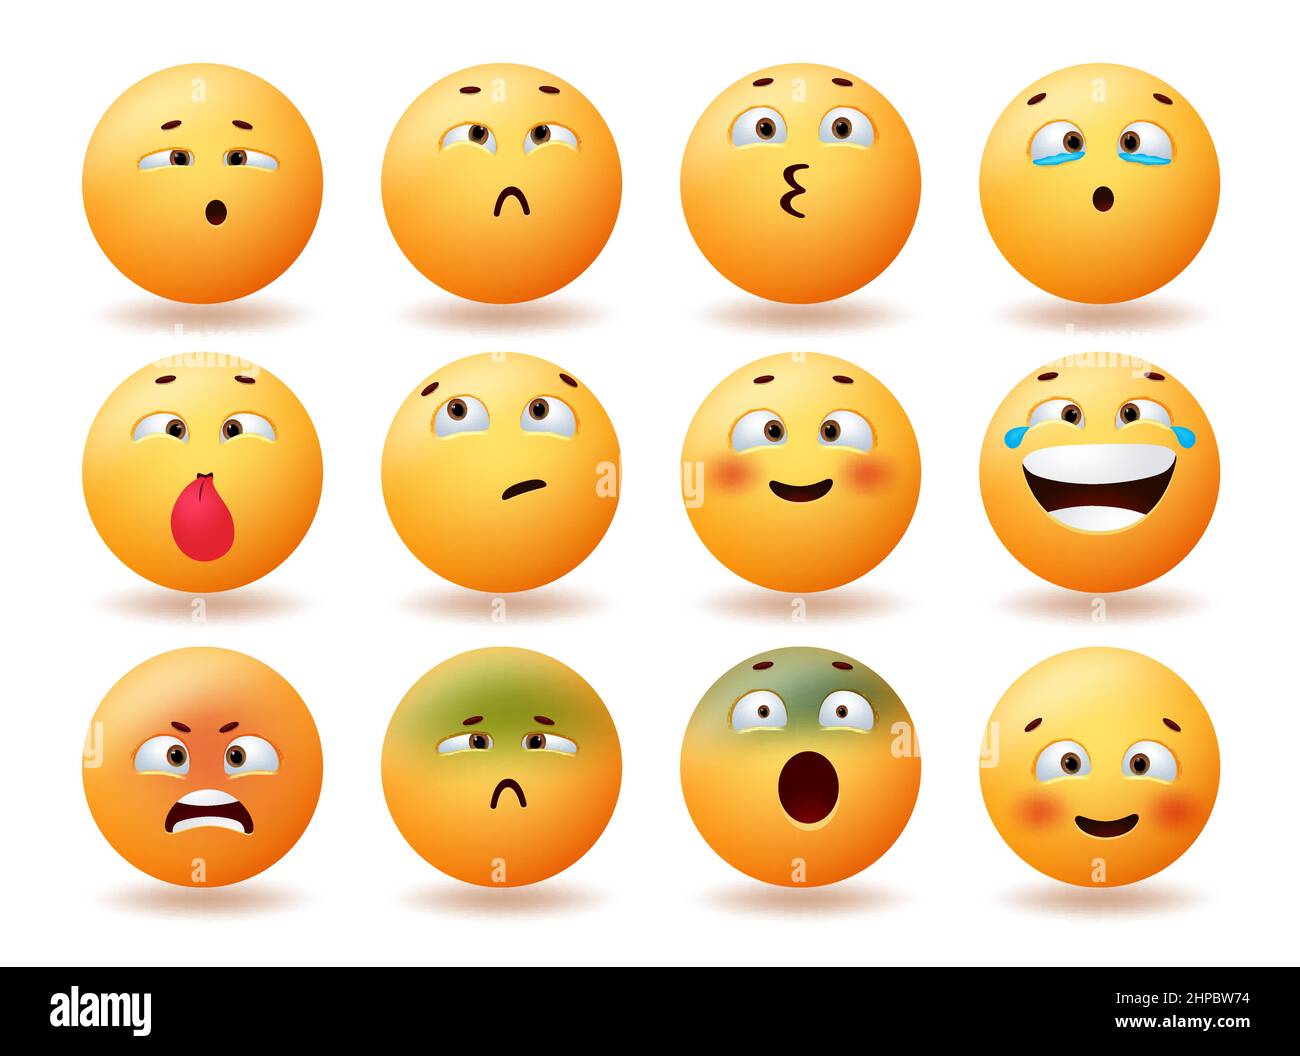 Emoji niedlichen Emoticons Vektor-Set-Design. Emoticon Charakter Gesichter mit Kreuzaugen, glücklich, lächelnd und wütend Reaktion für Emojis lustige Gesichtssammlung. Stock Vektor